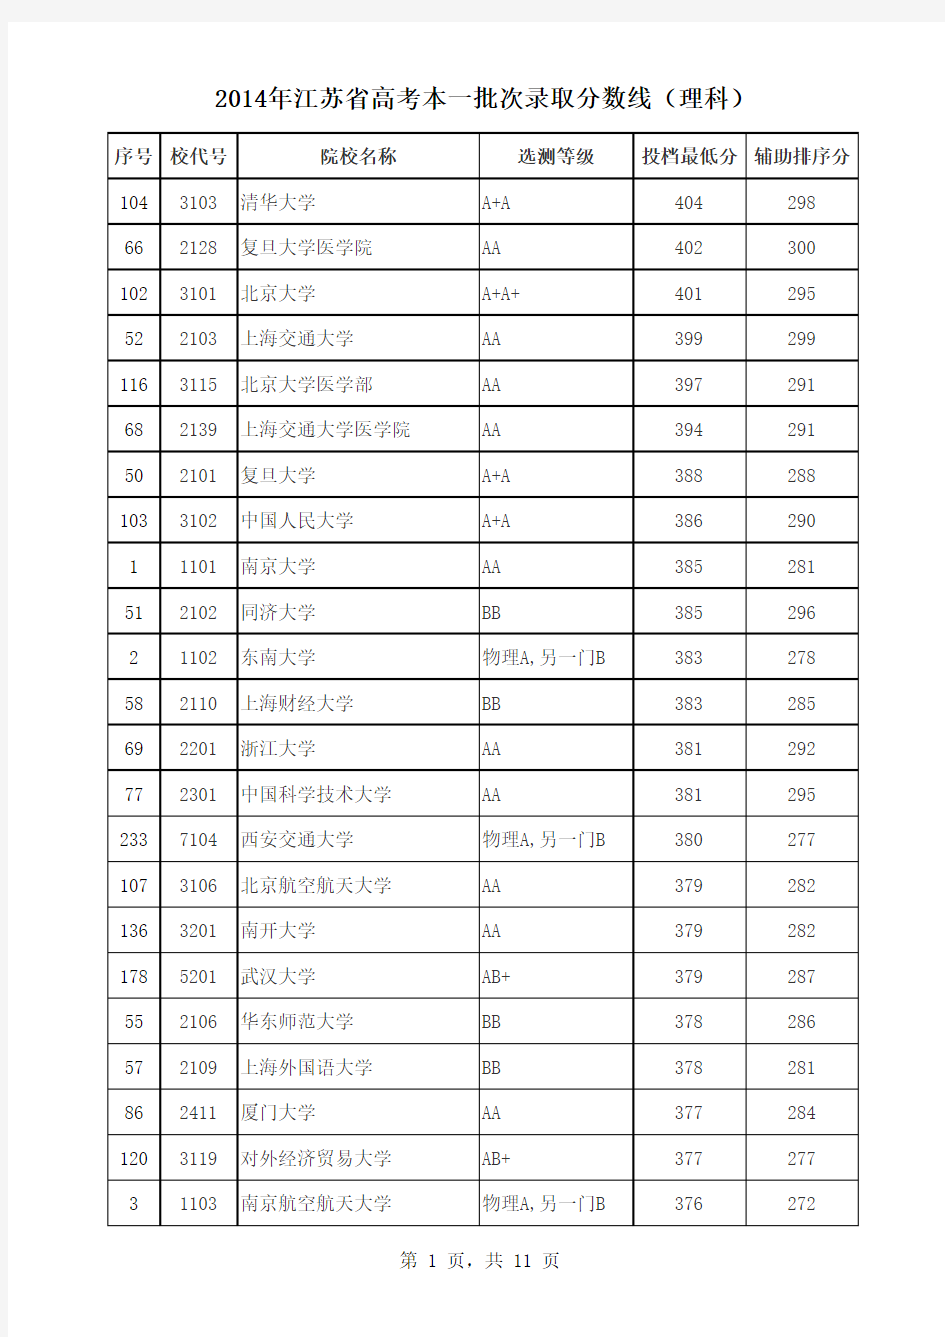 2014年江苏省高考本一批次录取分数线(理科)